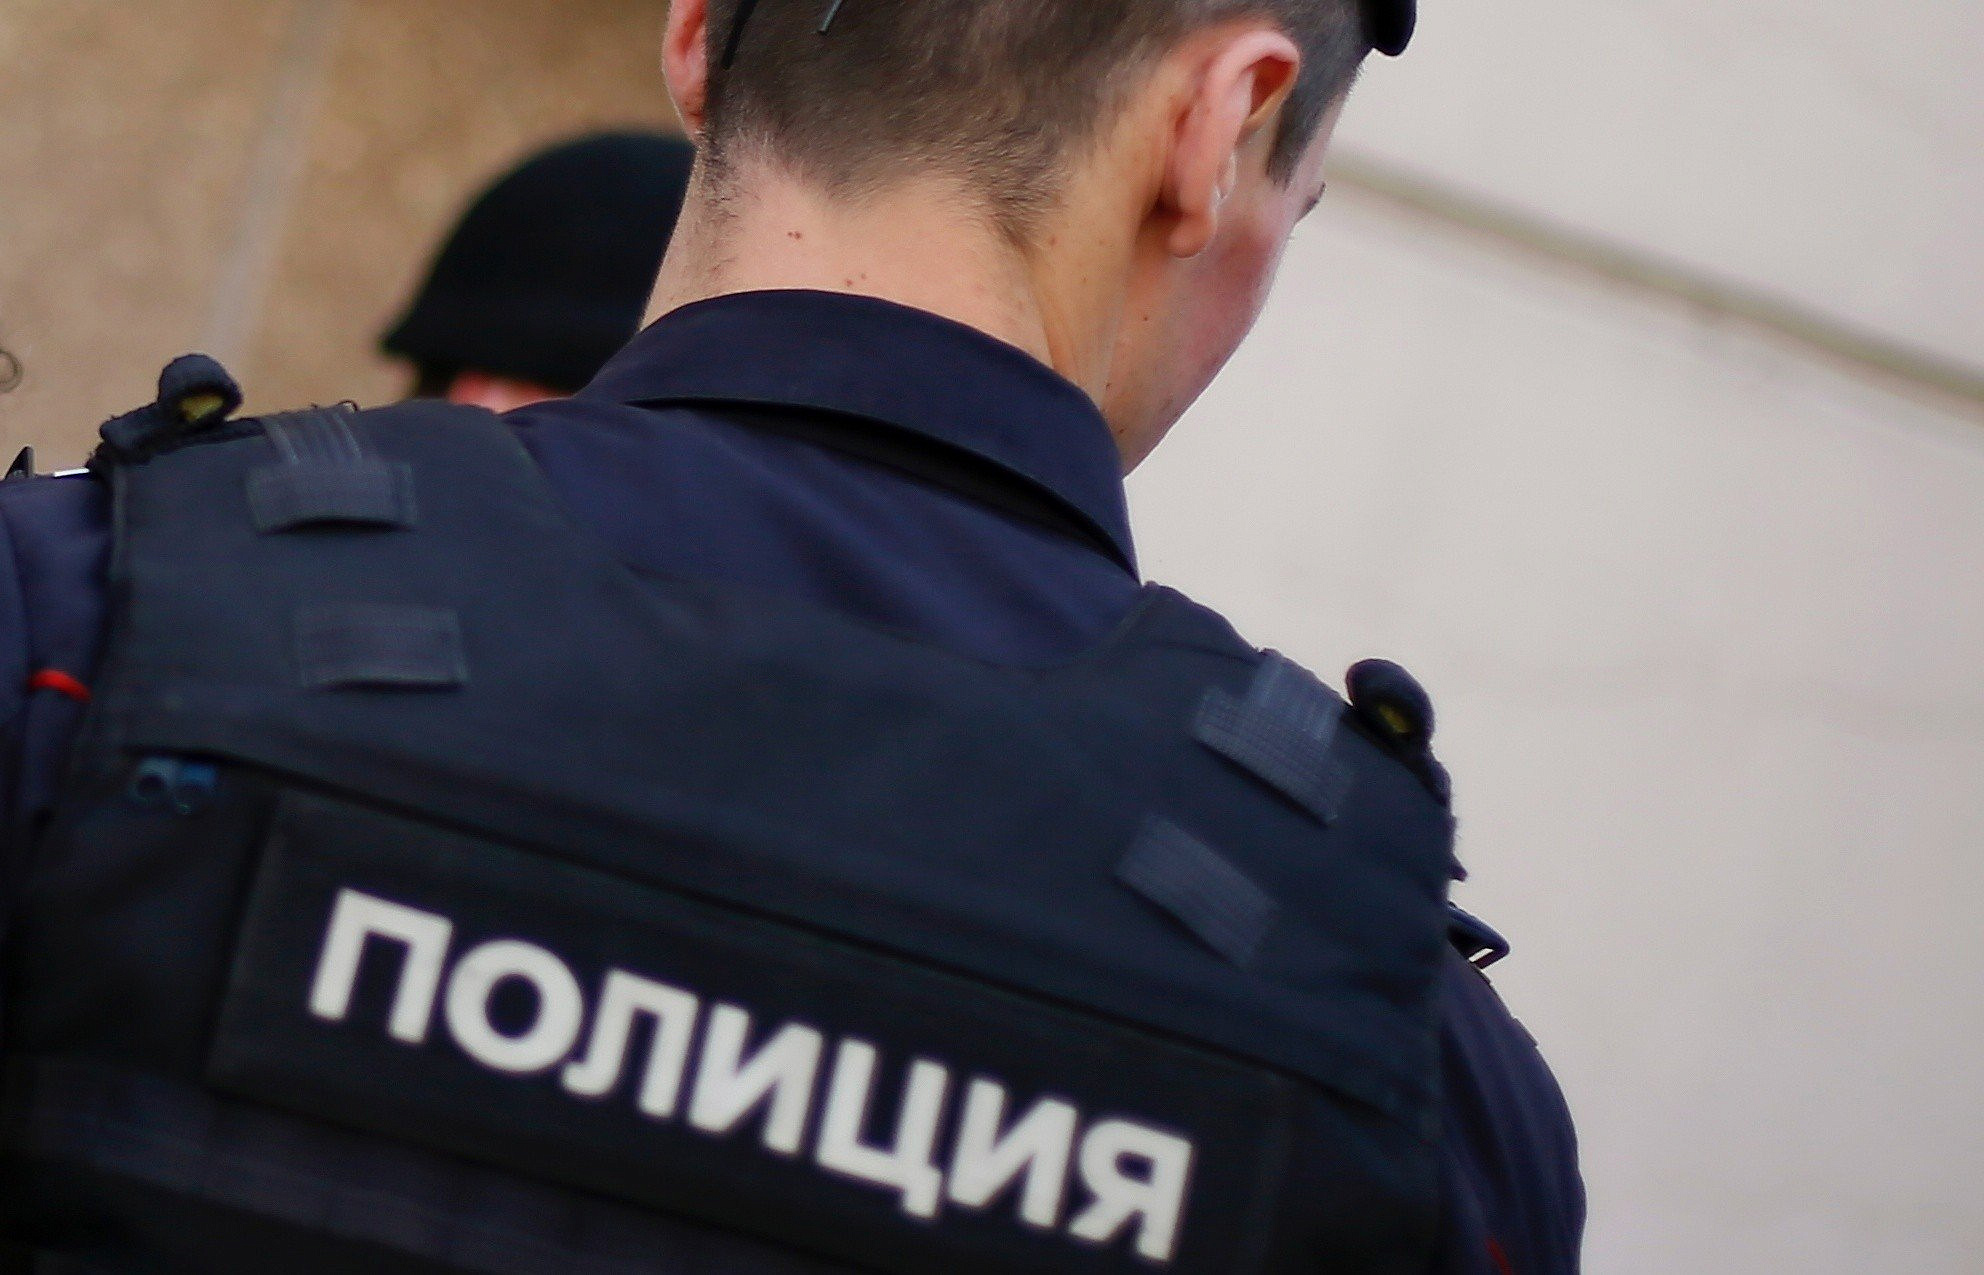 Антиквариат украли из квартиры в Большом Николопесковском переулке